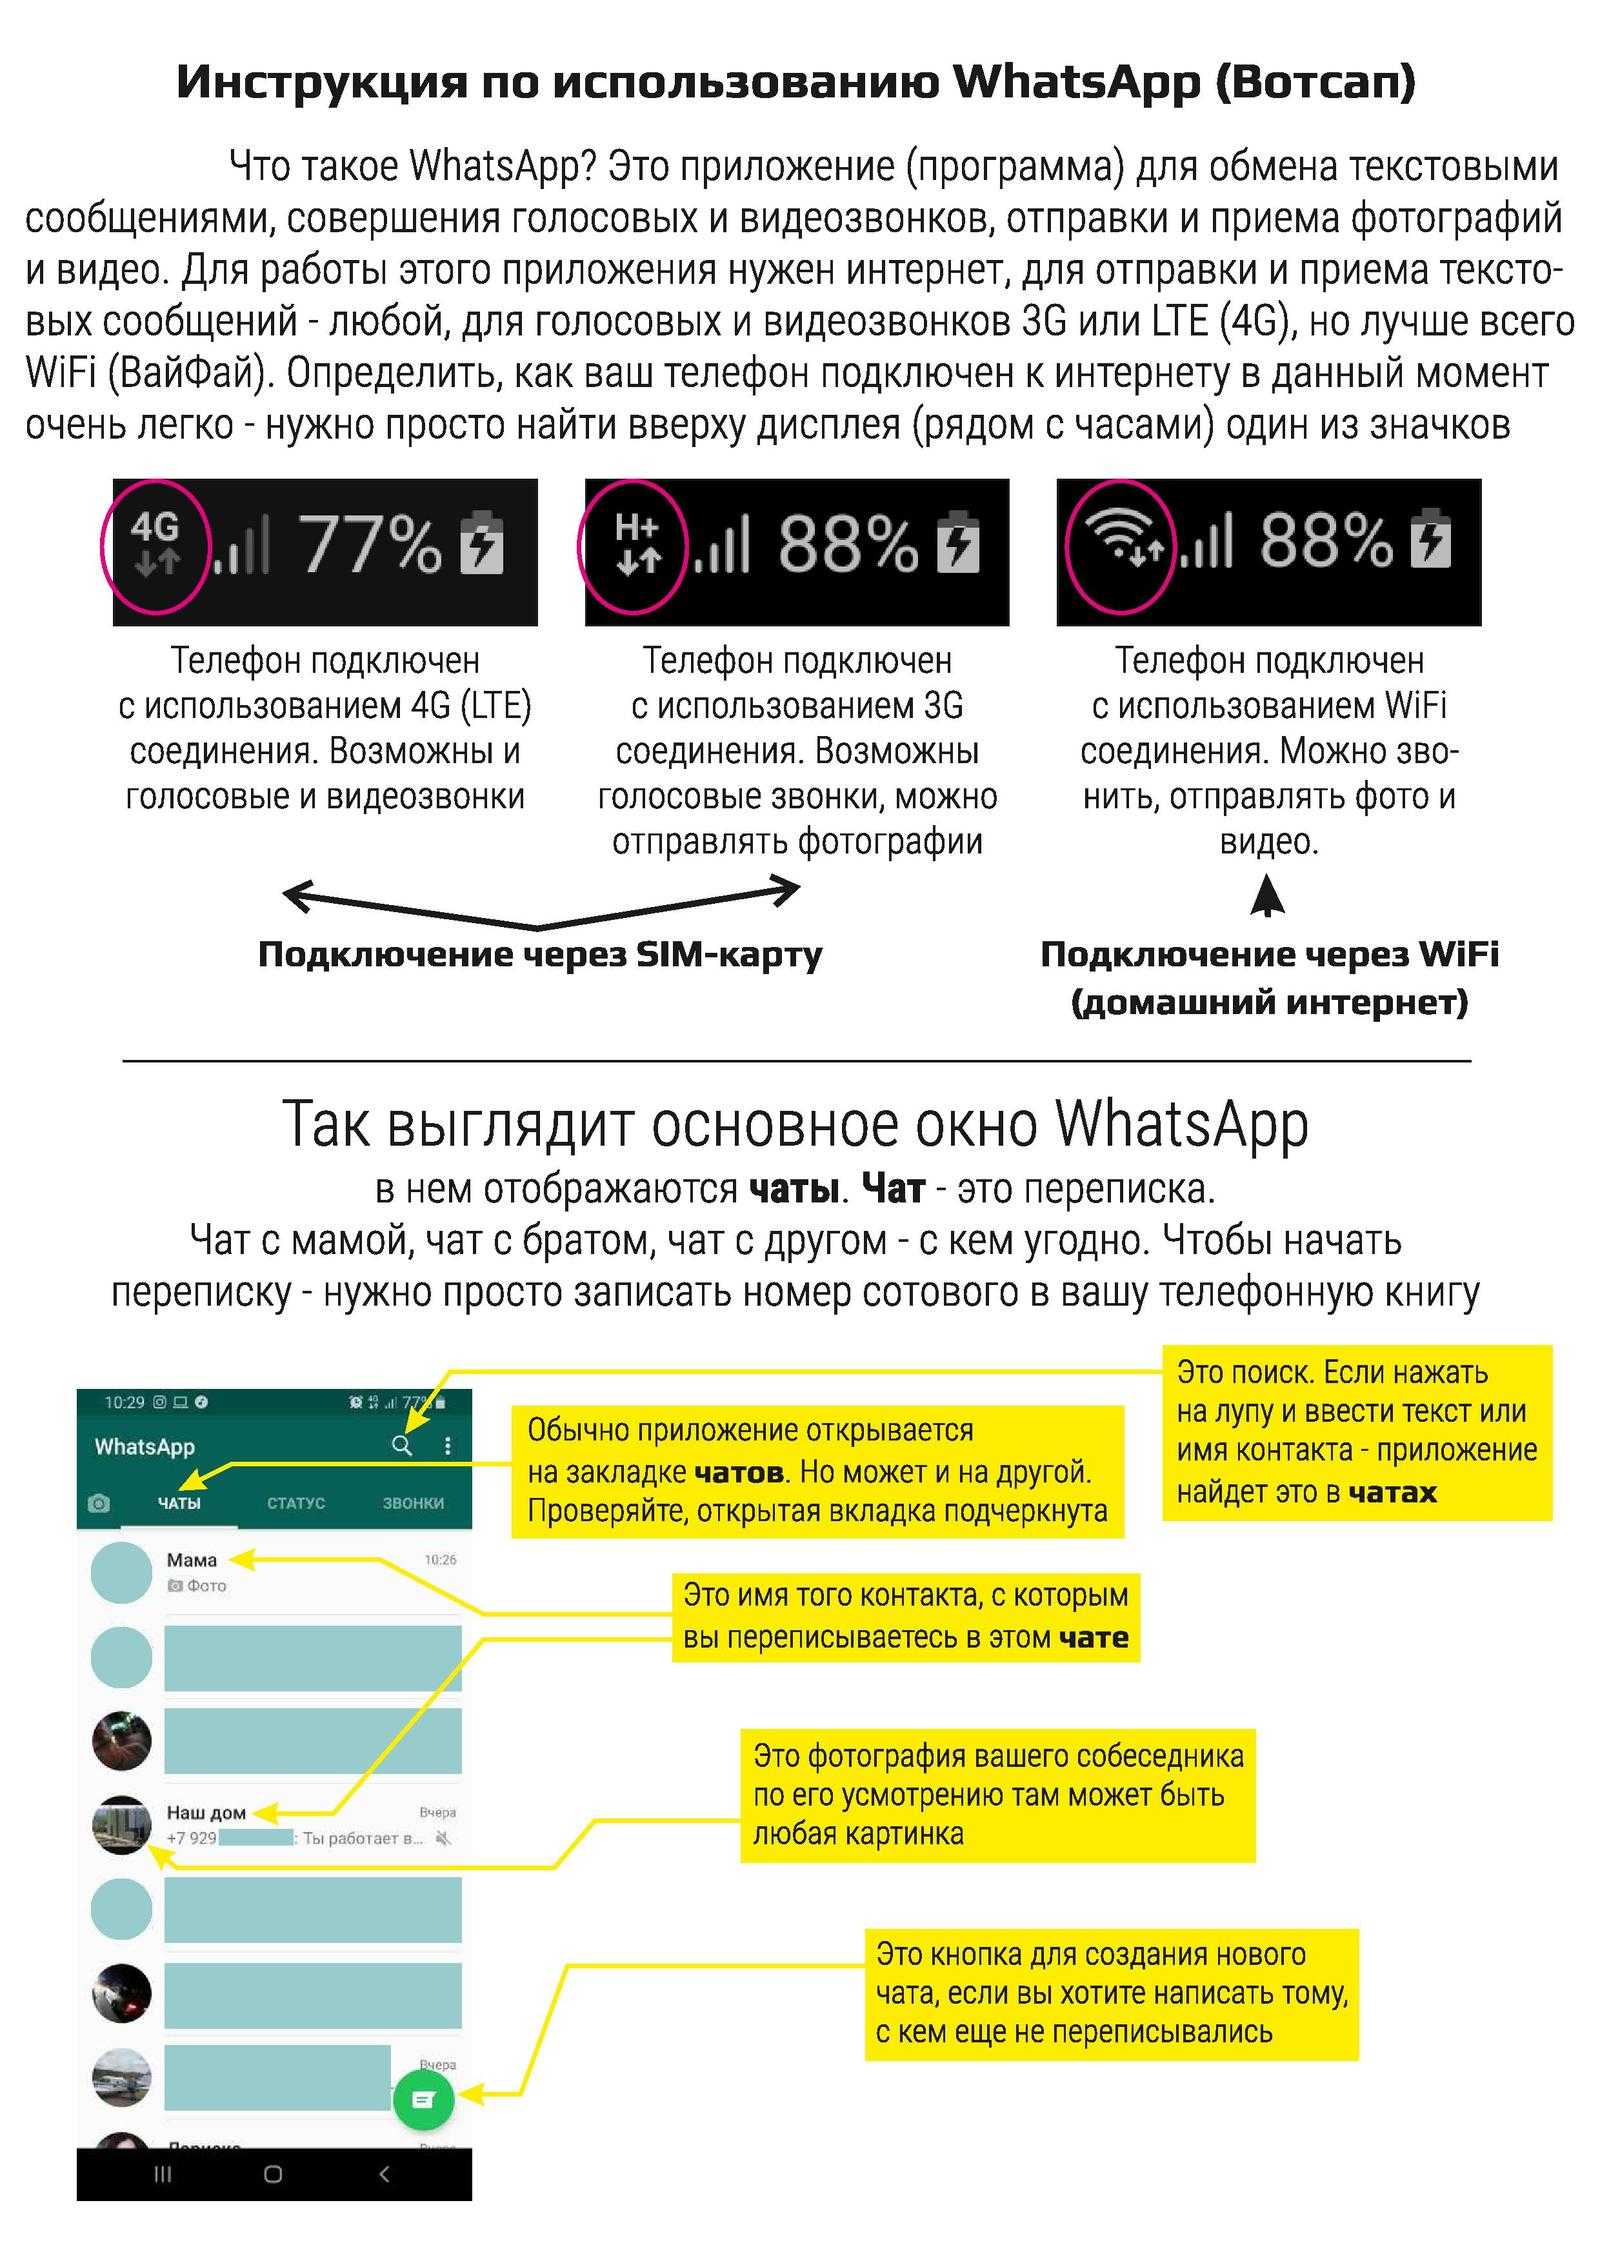 Как установить ватсап на телефон - пошаговая инструкция тарифкин.ру
как установить ватсап на телефон - пошаговая инструкция